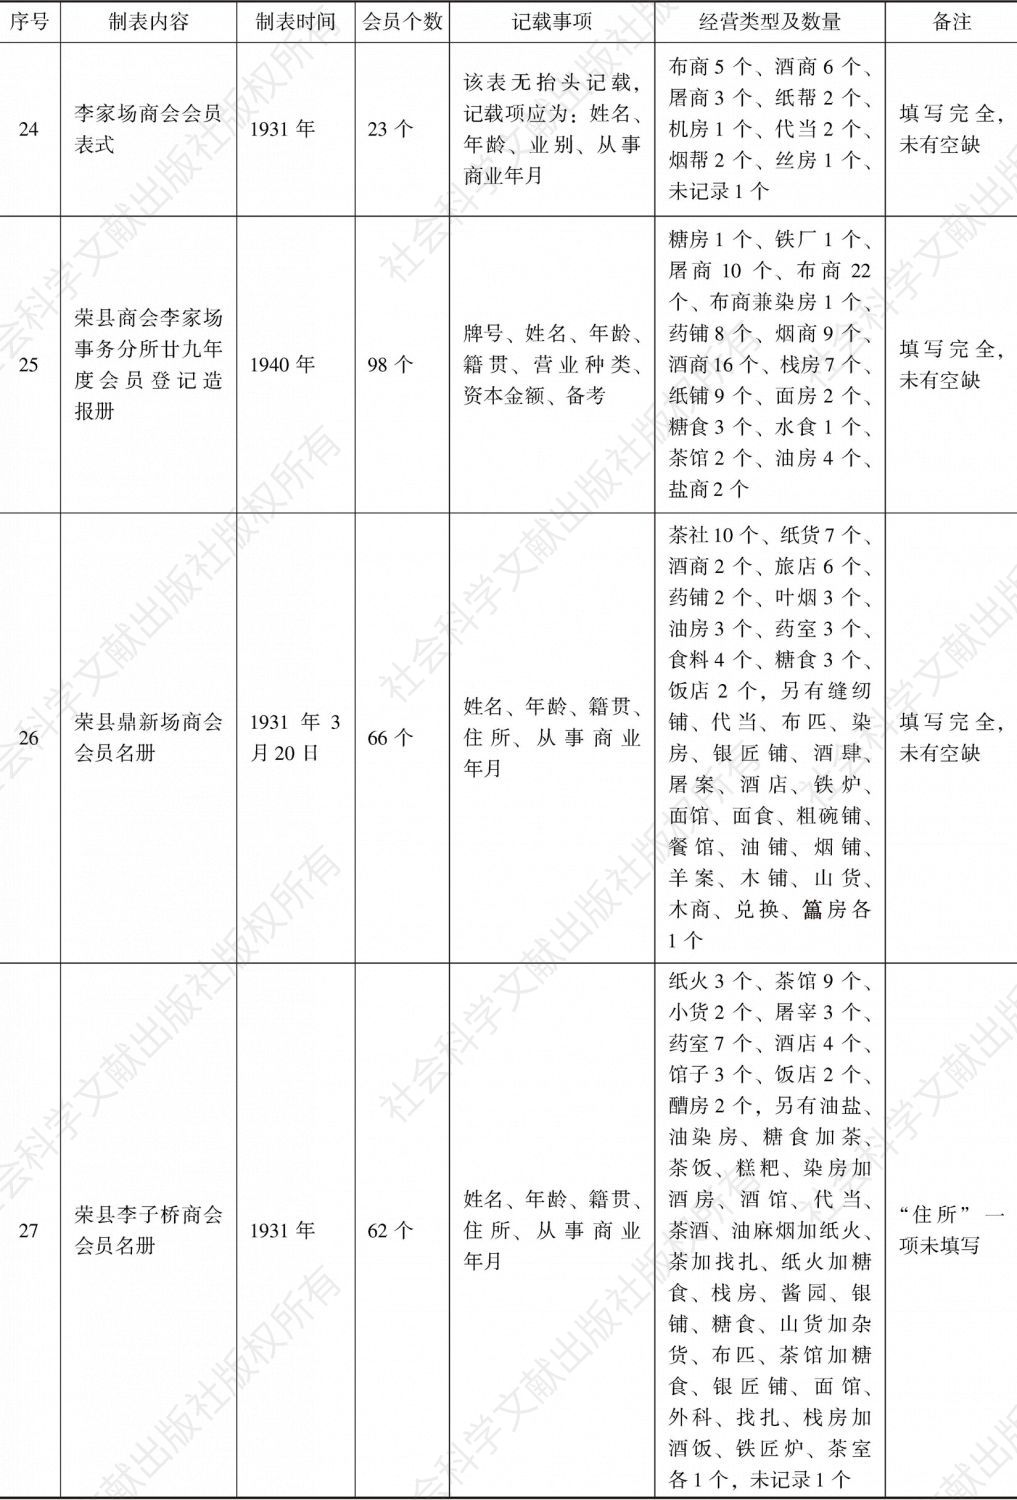 荣县商会事务分所造报名册汇编-续表6